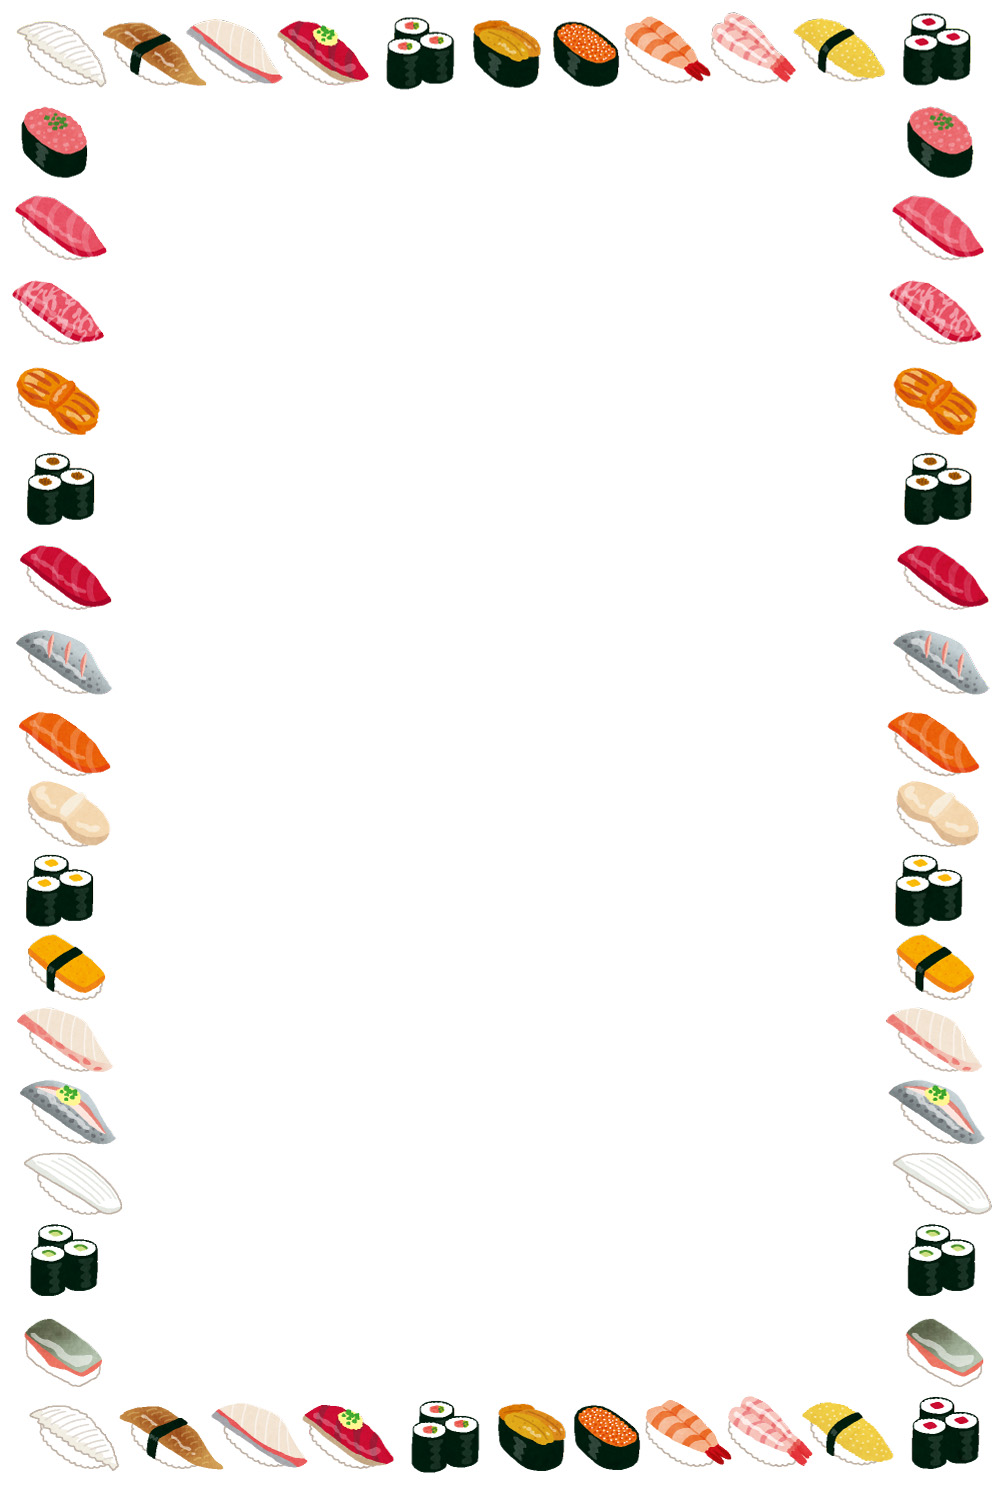 無料イラスト かわいいフリー素材集 お寿司のイラストフレーム 枠